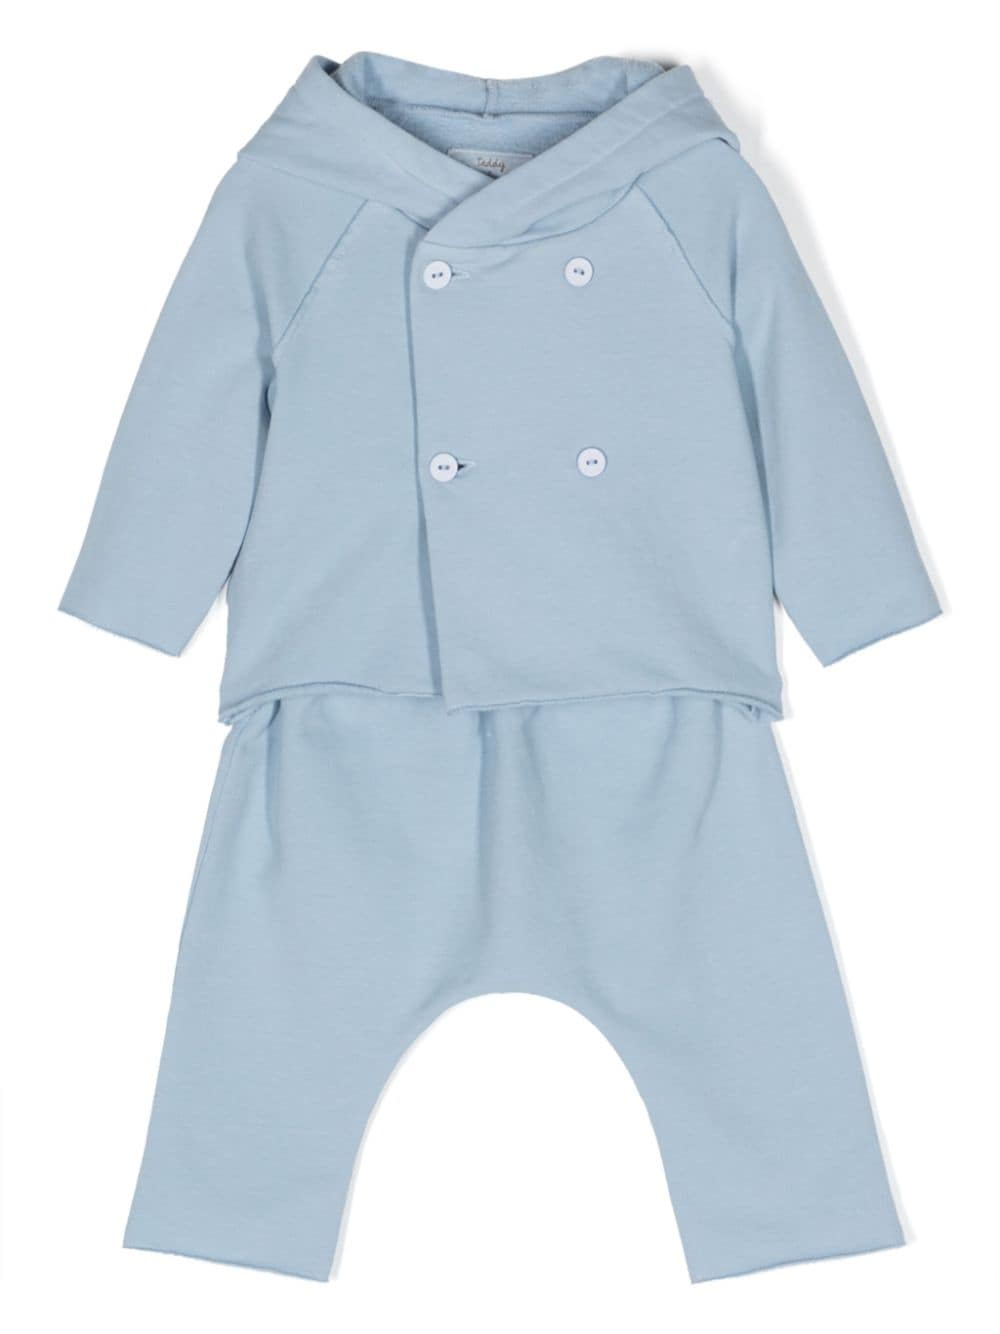 Teddy & Minou Babies' 双排扣运动套装 In Blue